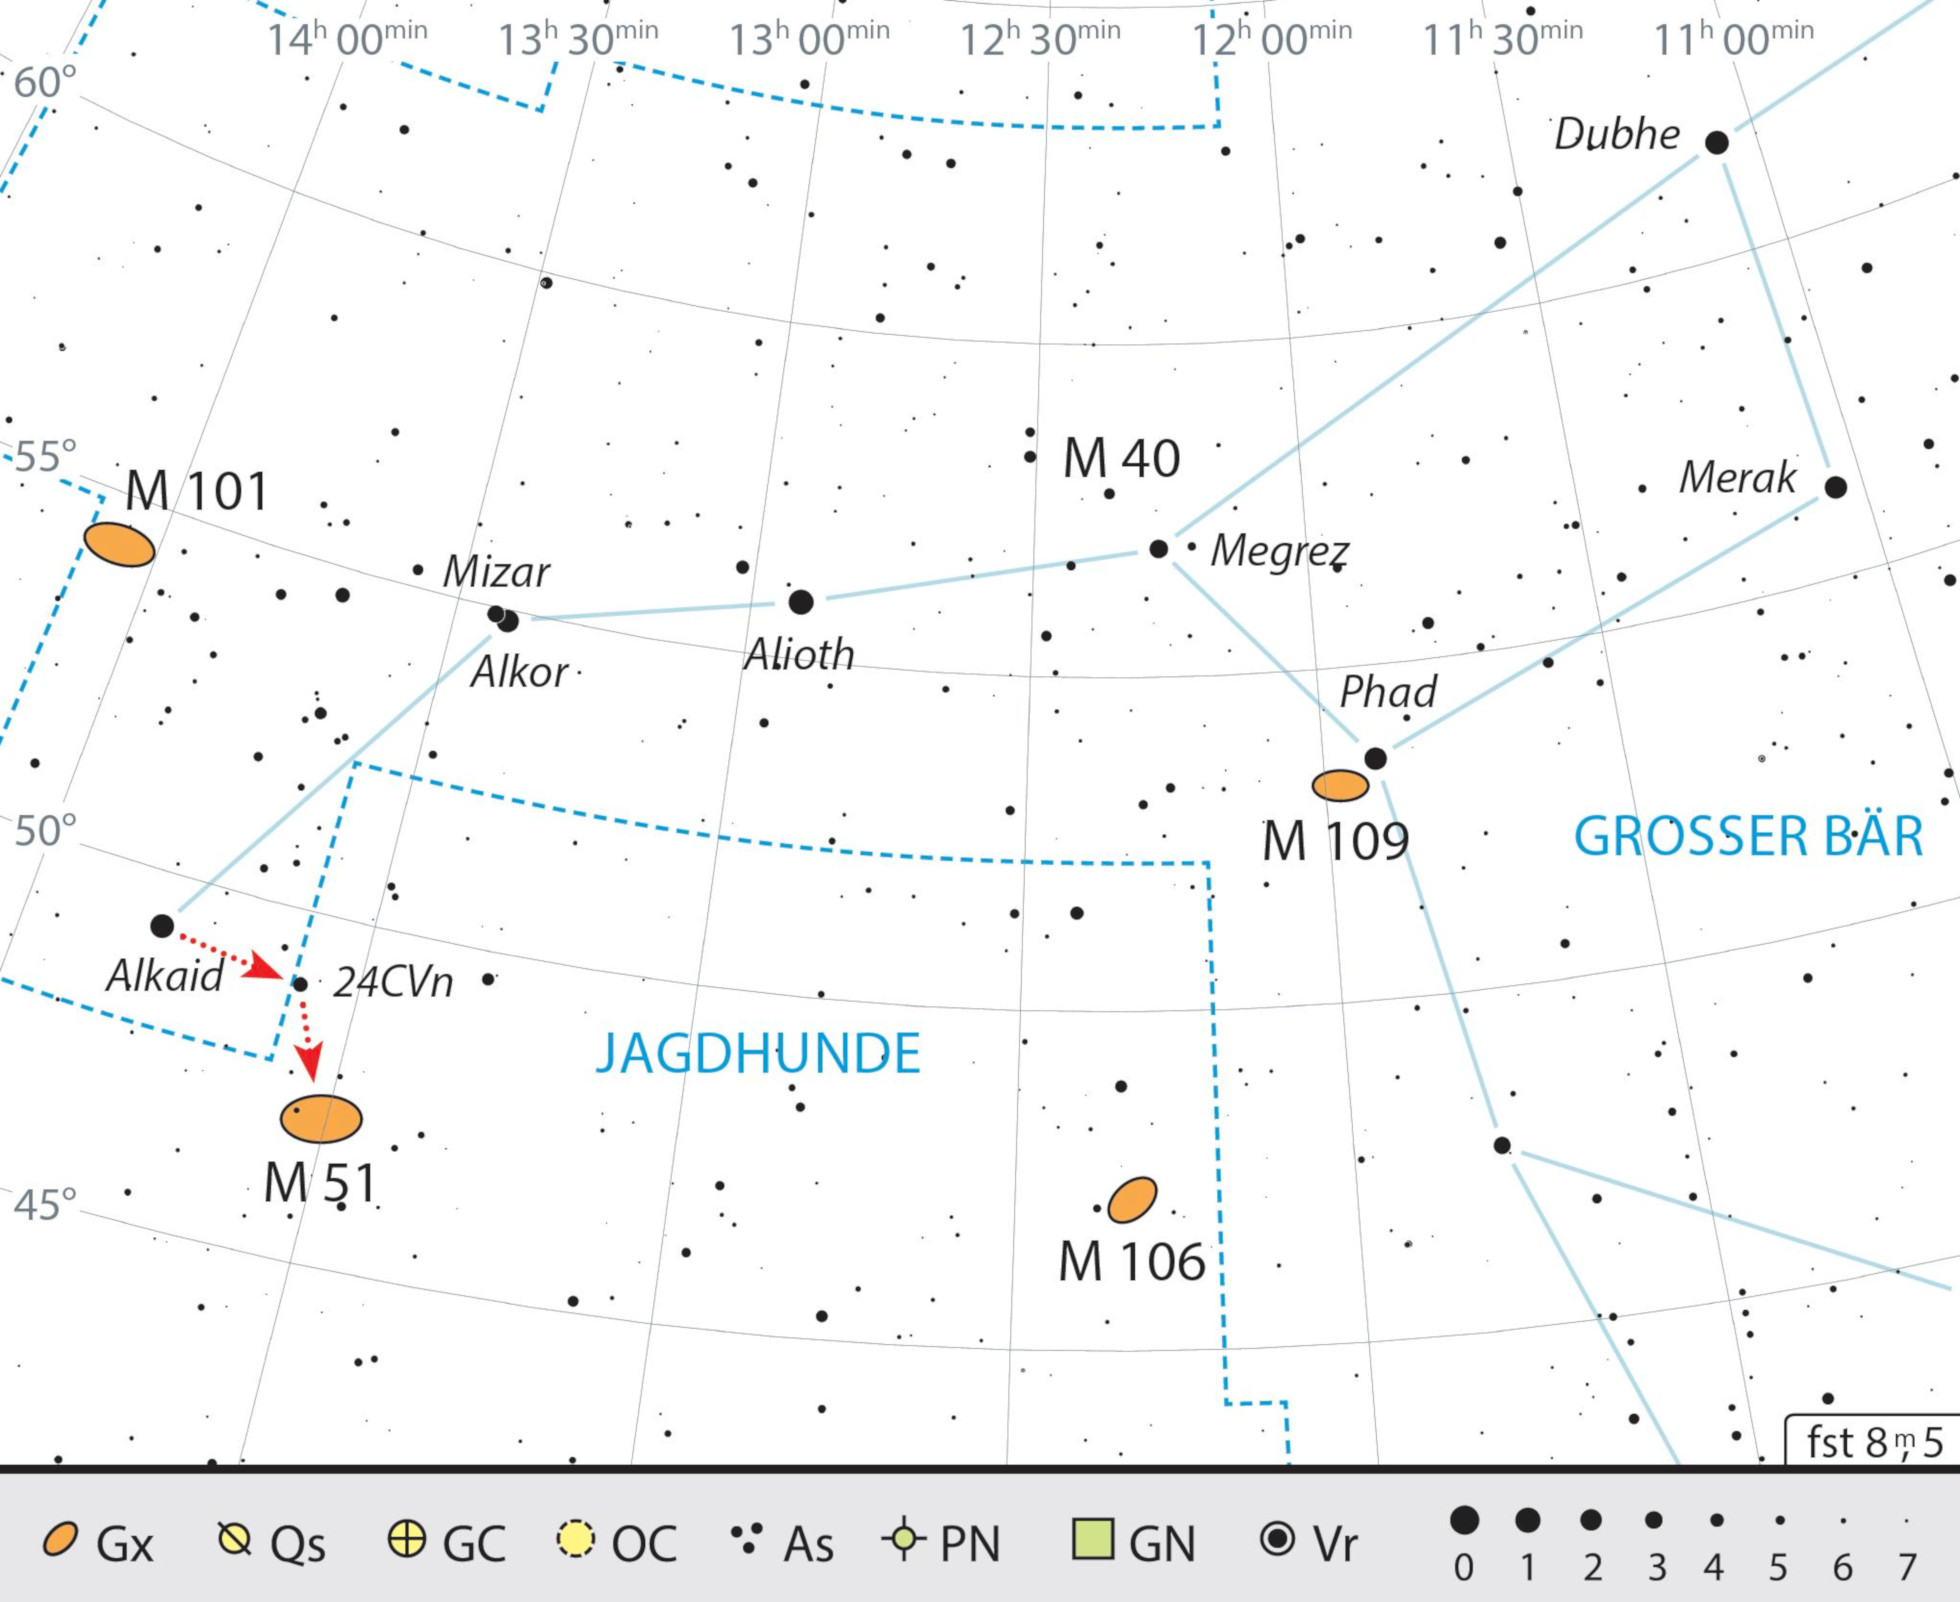 Mappa celeste per M51 nella costellazione dei Cani da Caccia. J. Scholten